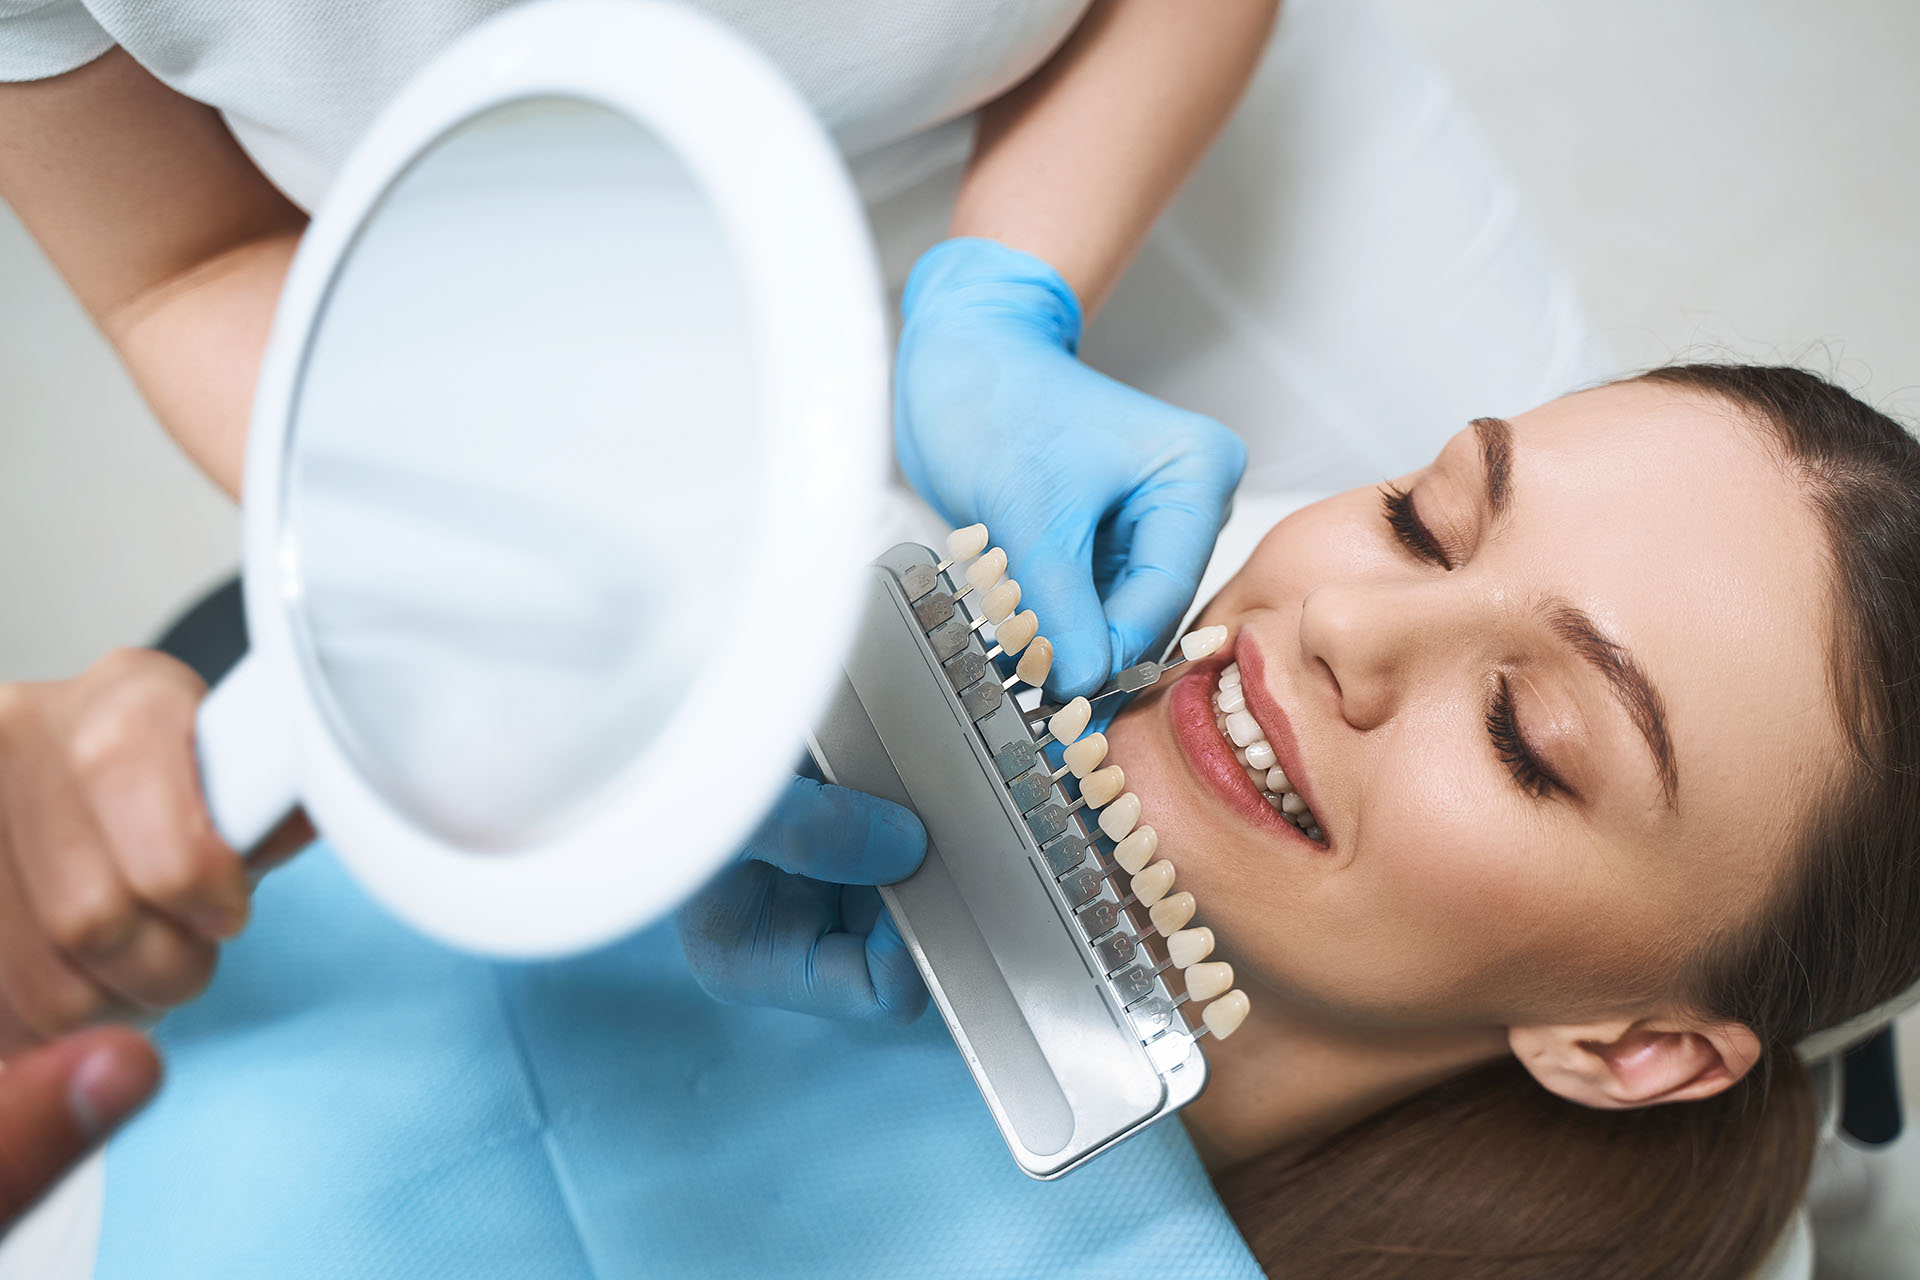 Clínica Dental Andrea Compte, tu Centro Odontológico especializado. Odontología estética en Cervera del Maestre. Paciente escogiendo el tono que desea para su blanqueamiento dental.